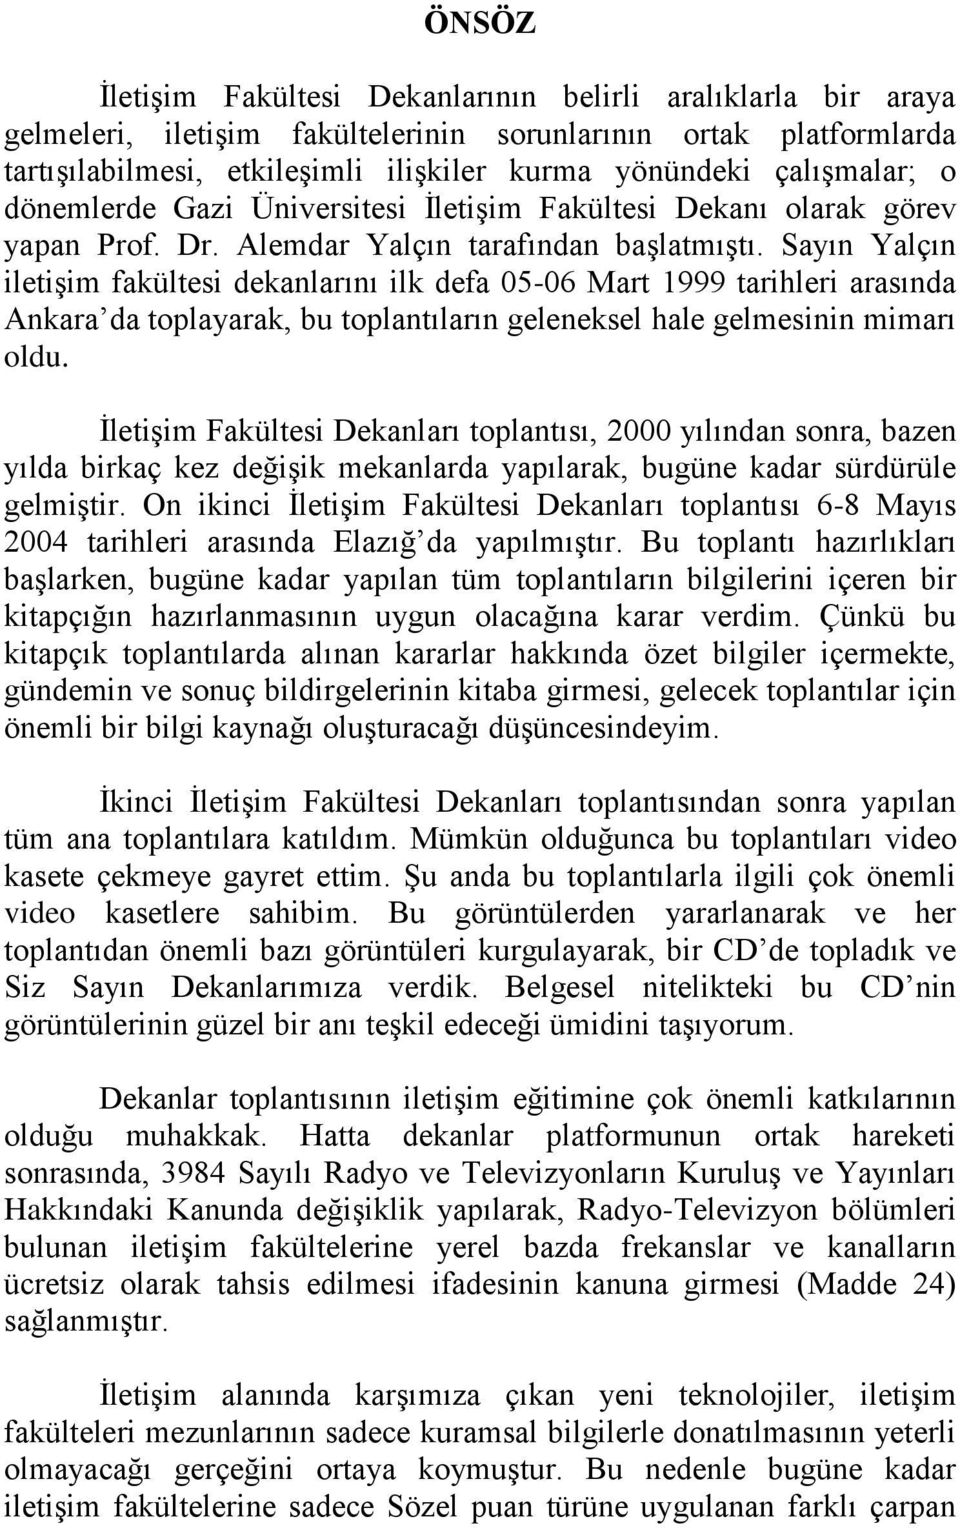 Sayın Yalçın iletişim fakültesi dekanlarını ilk defa 05-06 Mart 1999 tarihleri arasında Ankara da toplayarak, bu toplantıların geleneksel hale gelmesinin mimarı oldu.